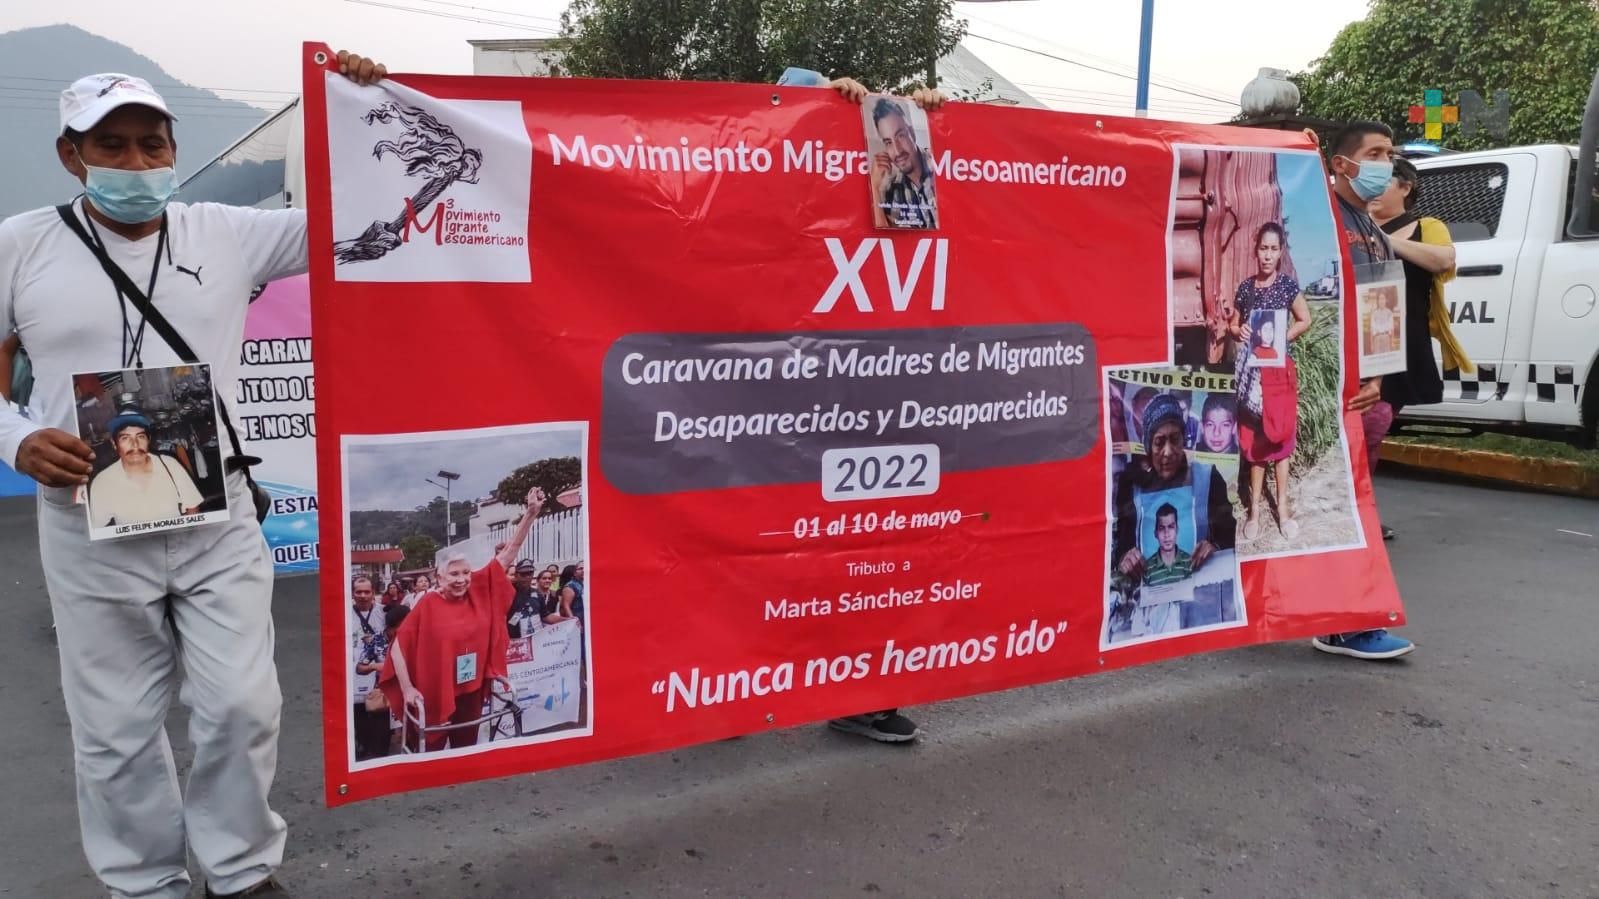 Caravana de Madres del Movimiento Migrantes Mesoamericano llegó al albergue de Las Patronas